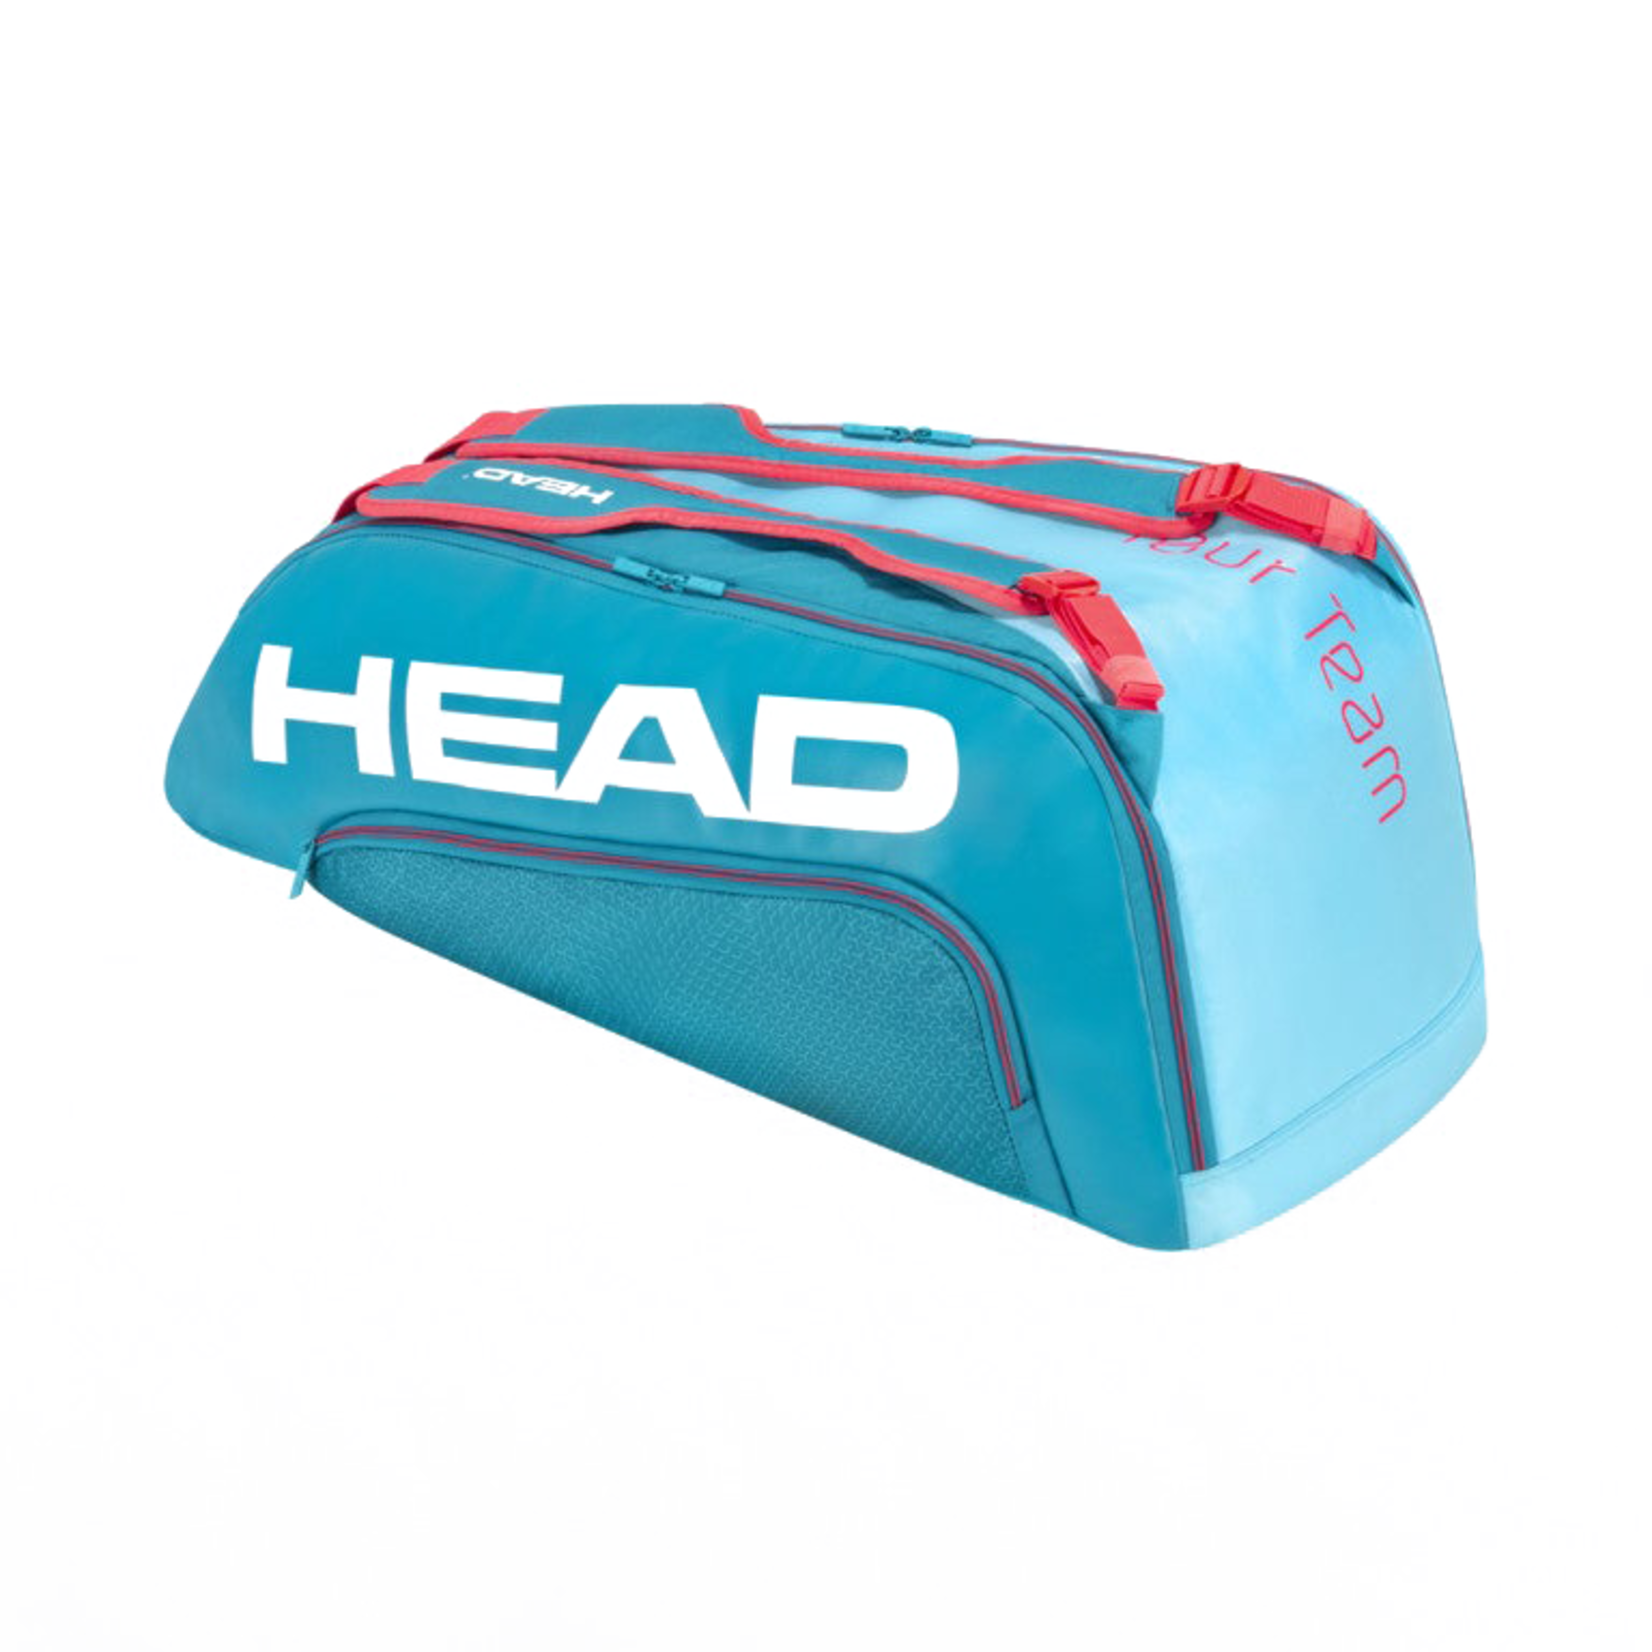 Head Head 9R Tour Team Bag (Teal/Pink)